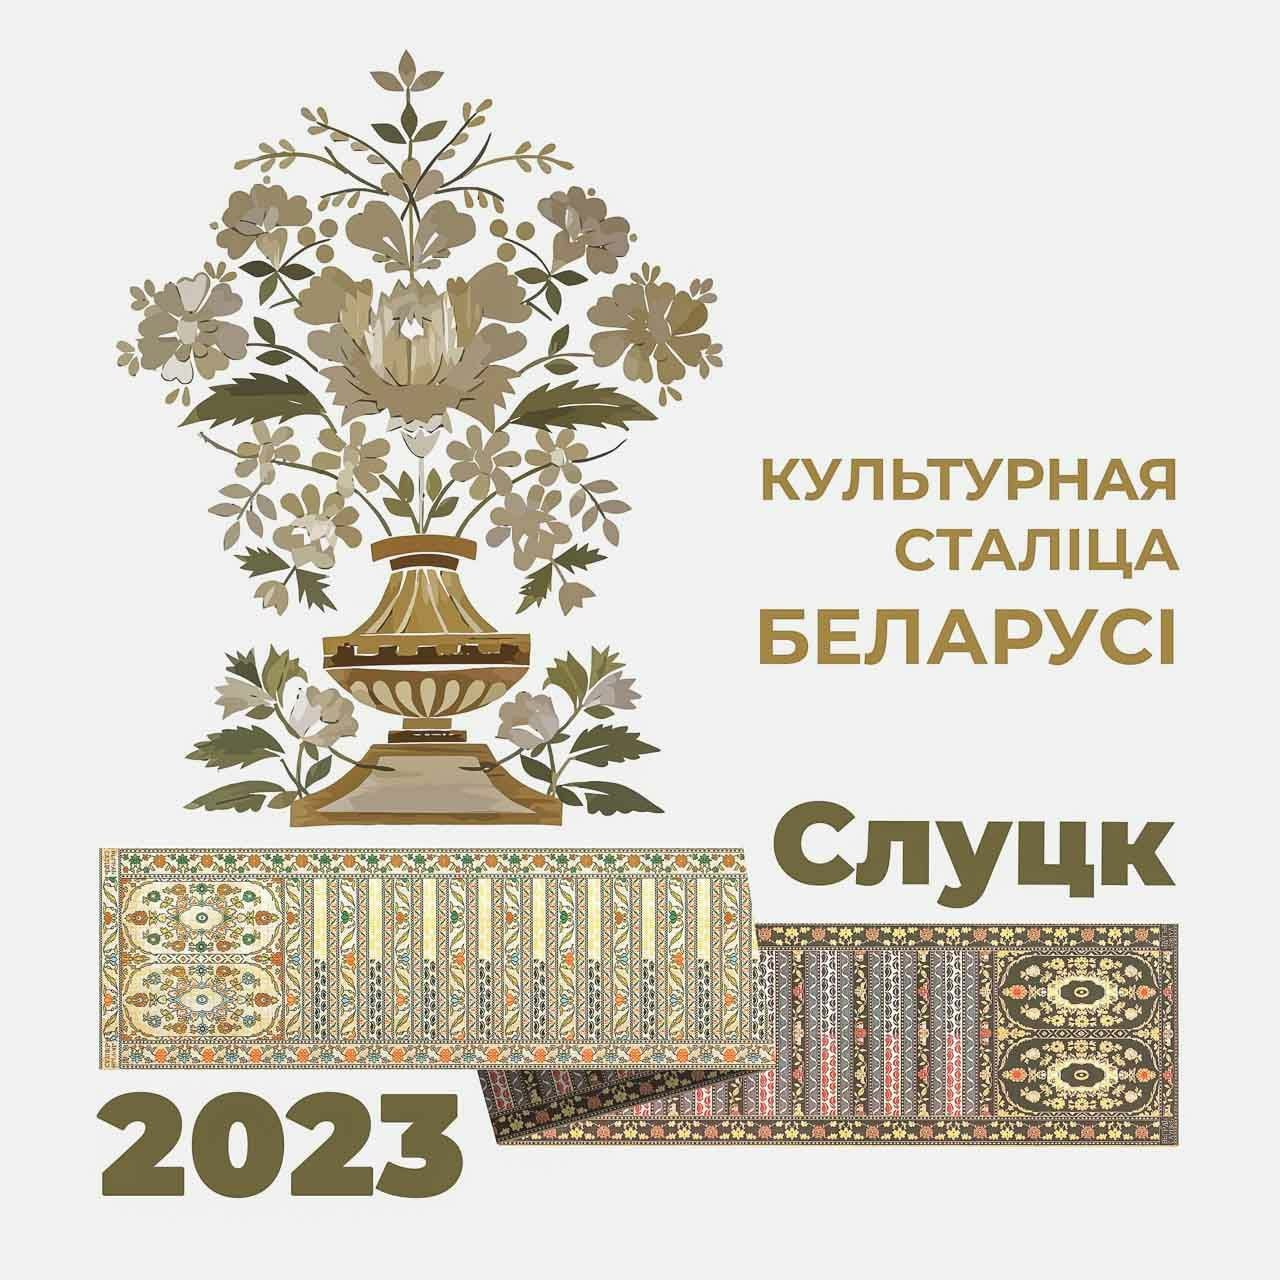 Слуцк — Культурная столица Беларуси 2023 года